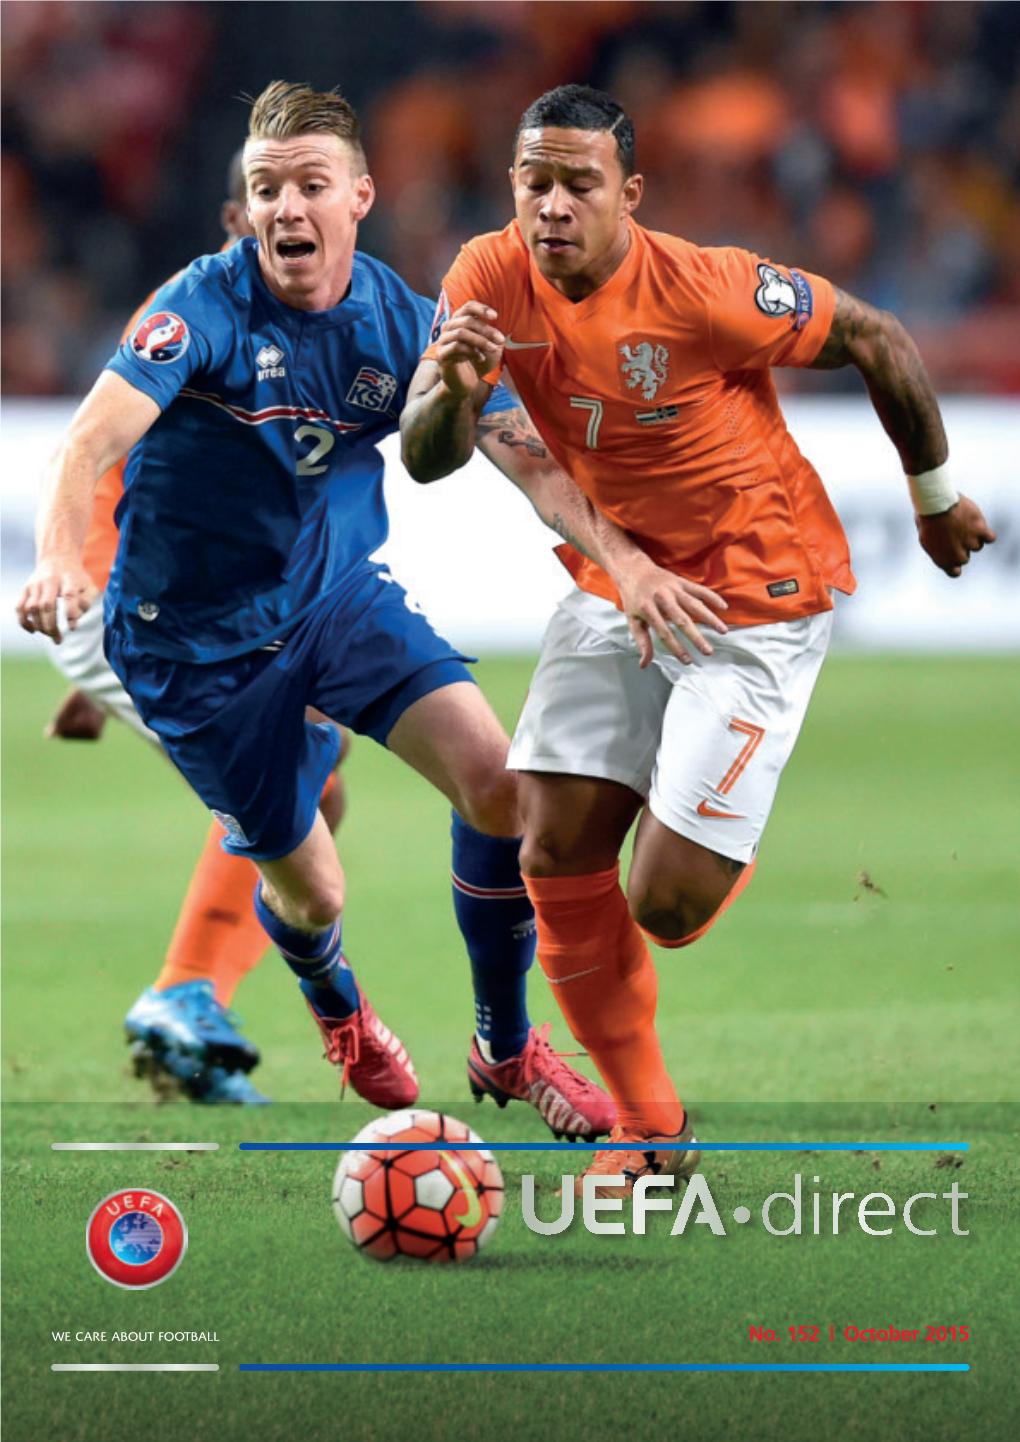 UEFA"Direct #152 (01.10.2015)